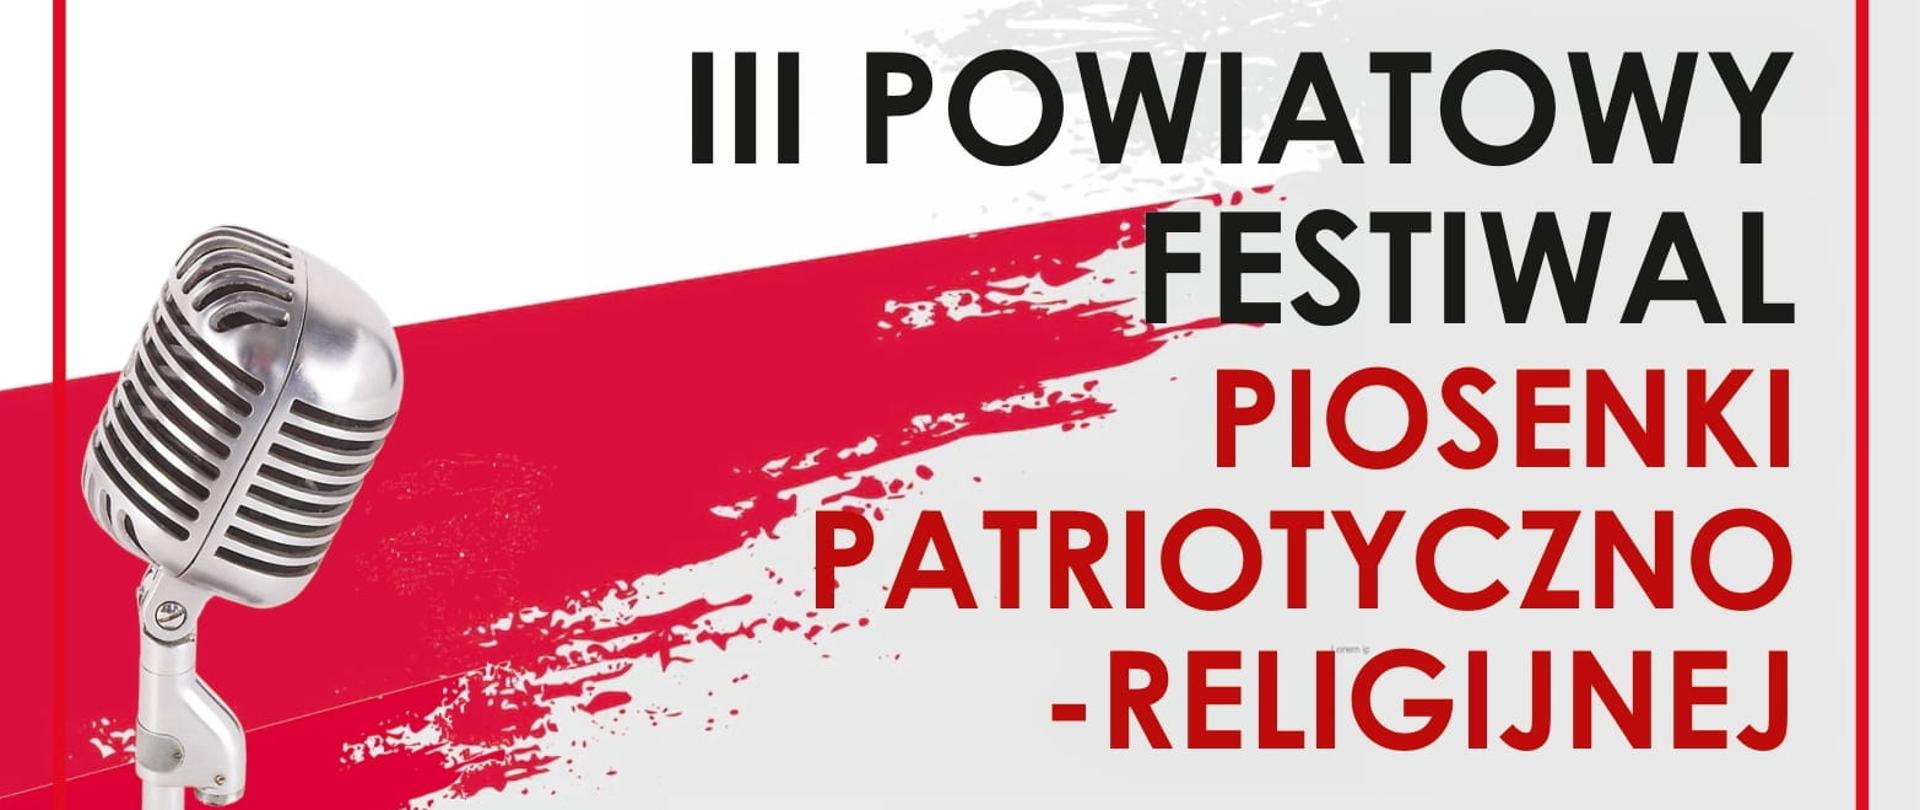 III Powiatowy Festiwal Piosenki Patriotyczno-Religijnej "Młodzi dla Niepodległej" - plakat informacyjny